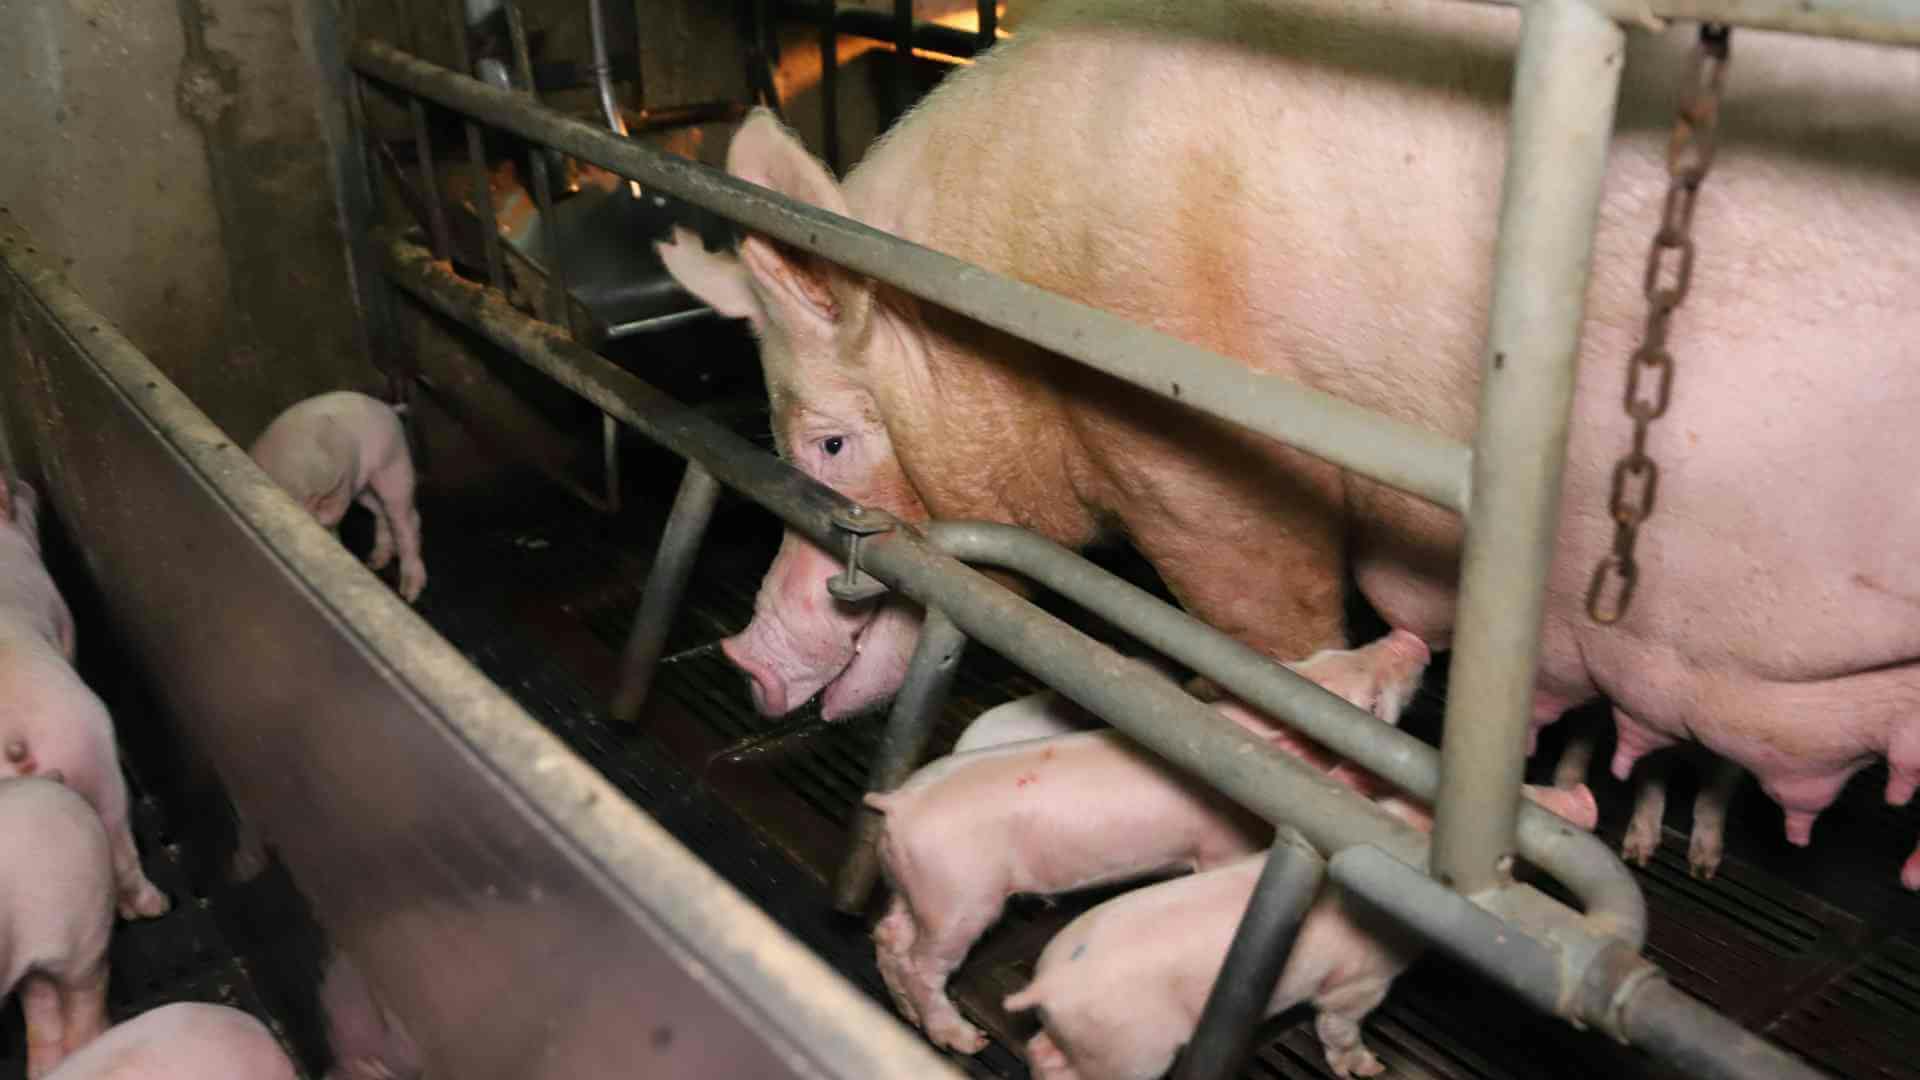 돼지 농장에서 새끼 돼지들이 어미의 젖을 먹고 있다. 이러한 축사는 DxE가 자주 방문하는 곳으로, 그동안 축사에 기습해 죽거나 병든 동물을 '공개구조'했다. 현장 사진 제공 DxE.